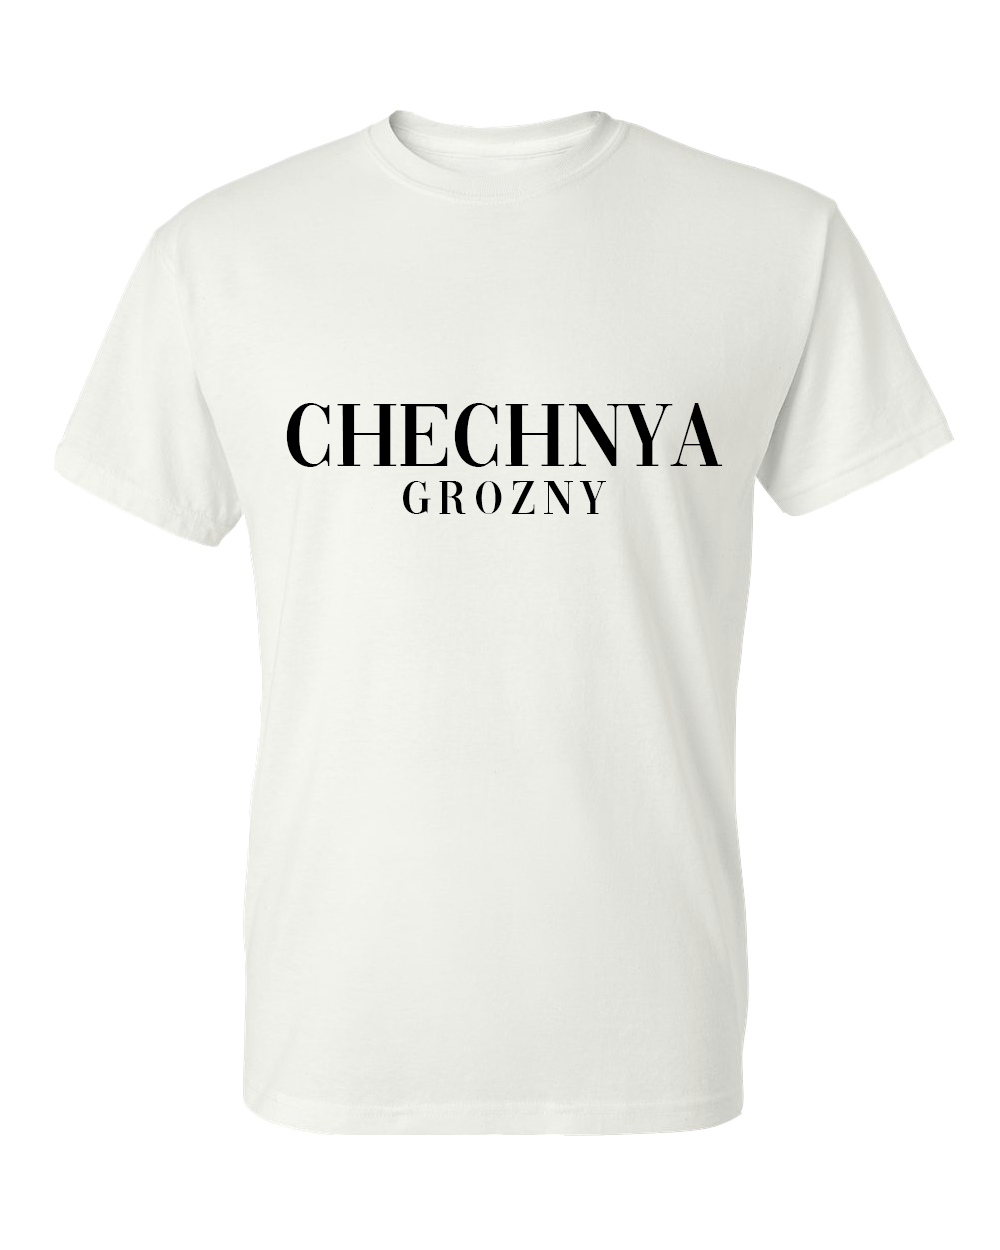 Chechnya Grozny